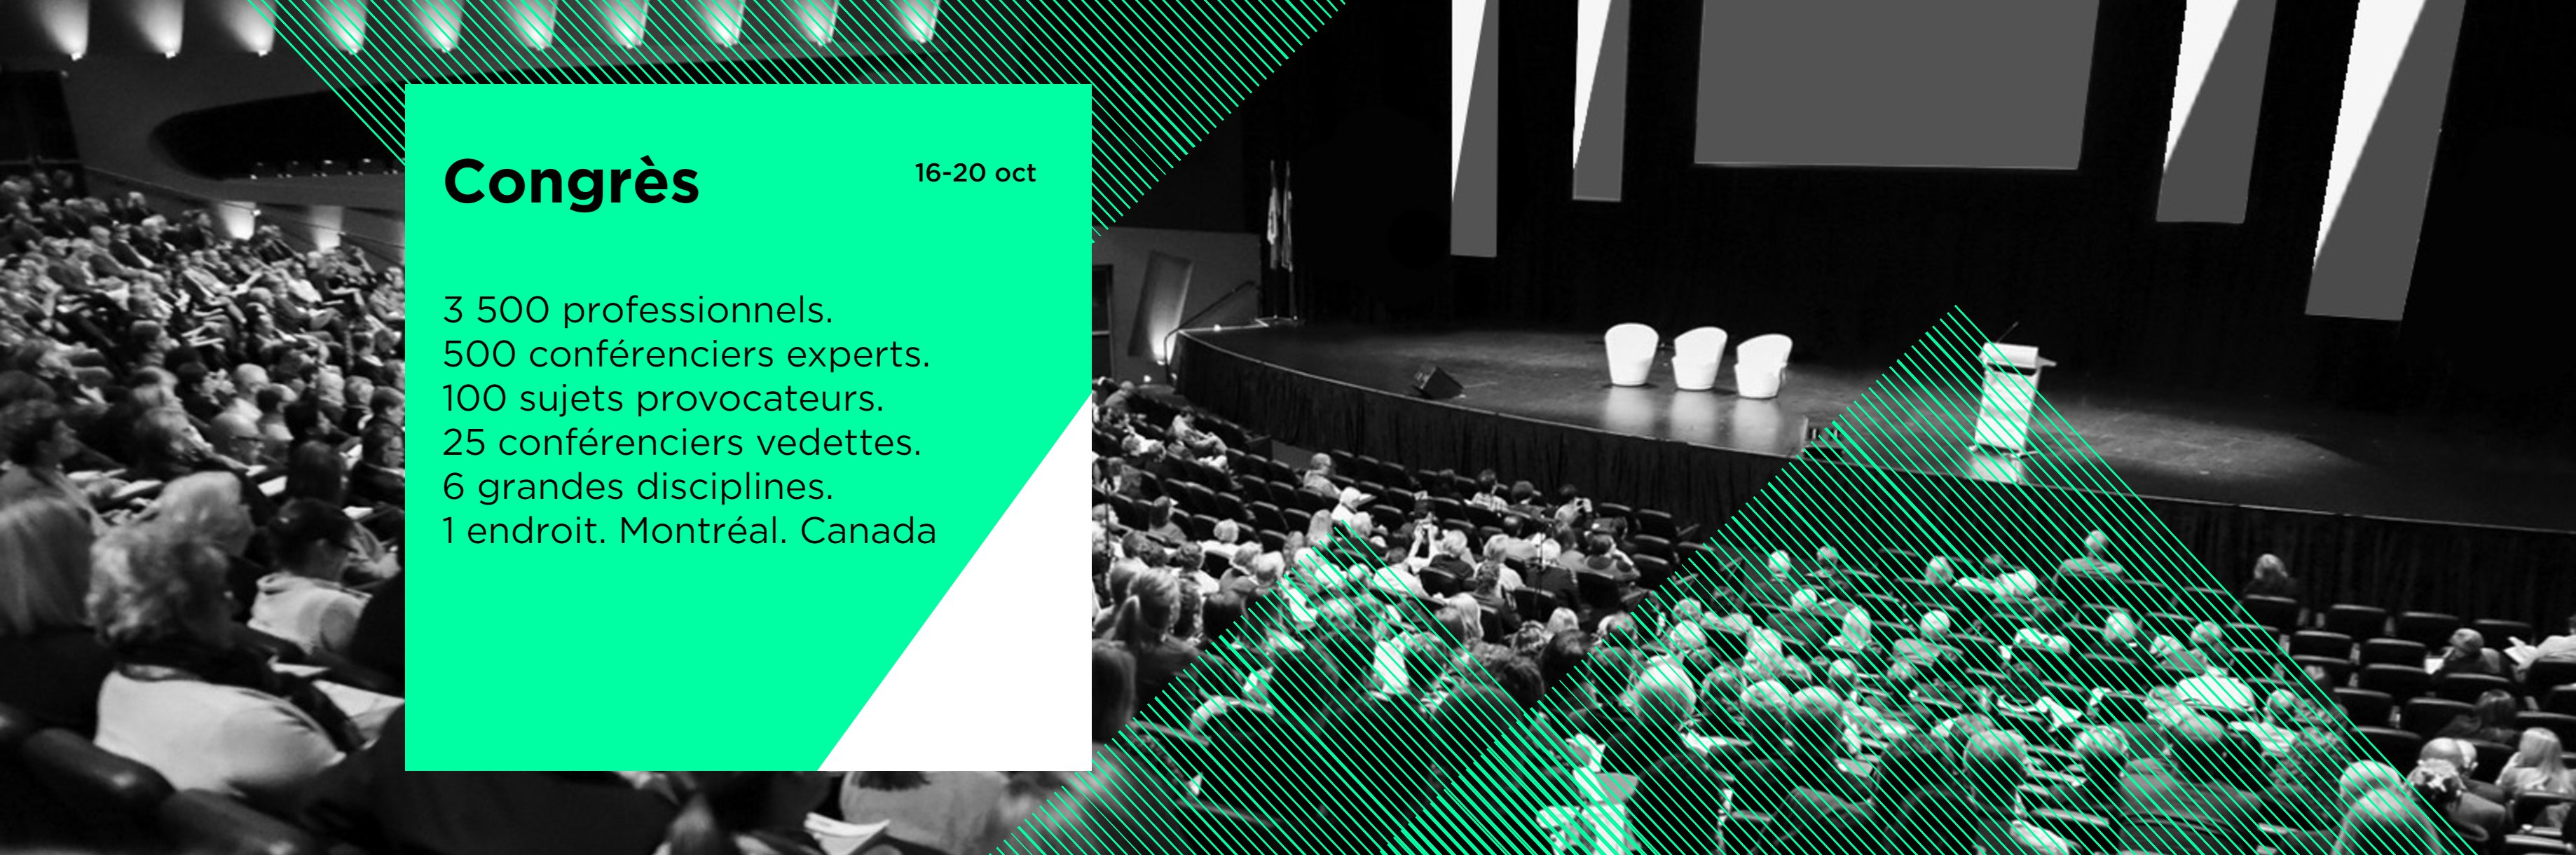 Le Sommet mondial du Design 2017 se tiendra à Montréal en octobre prochain